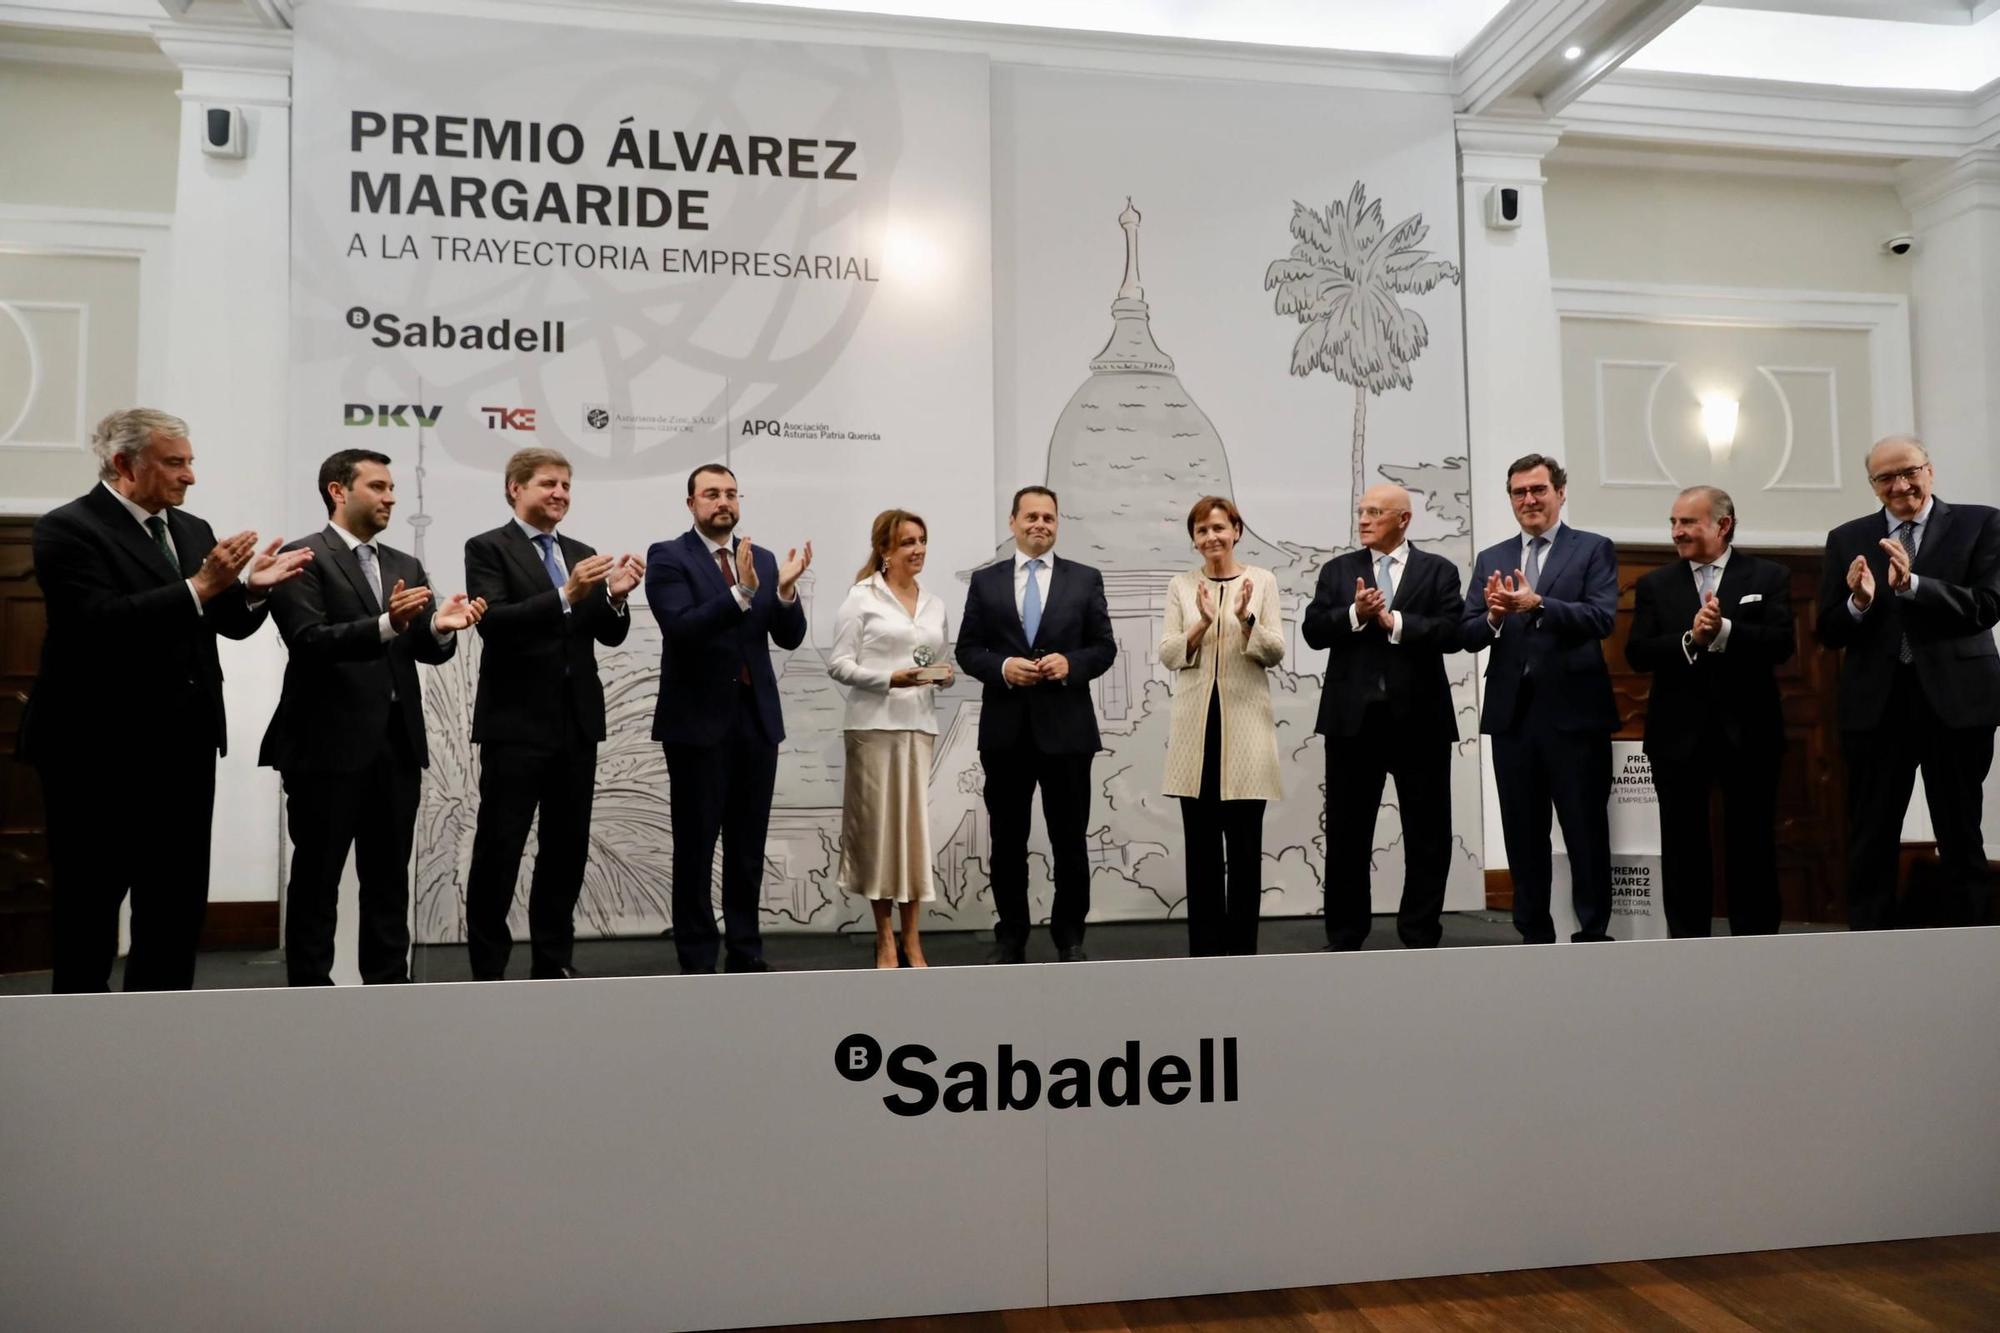 Obdulia Fernández y Víctor Madera reciben el premio "Álvarez Margaride": "Un ejemplo singular de generación de valor en España"